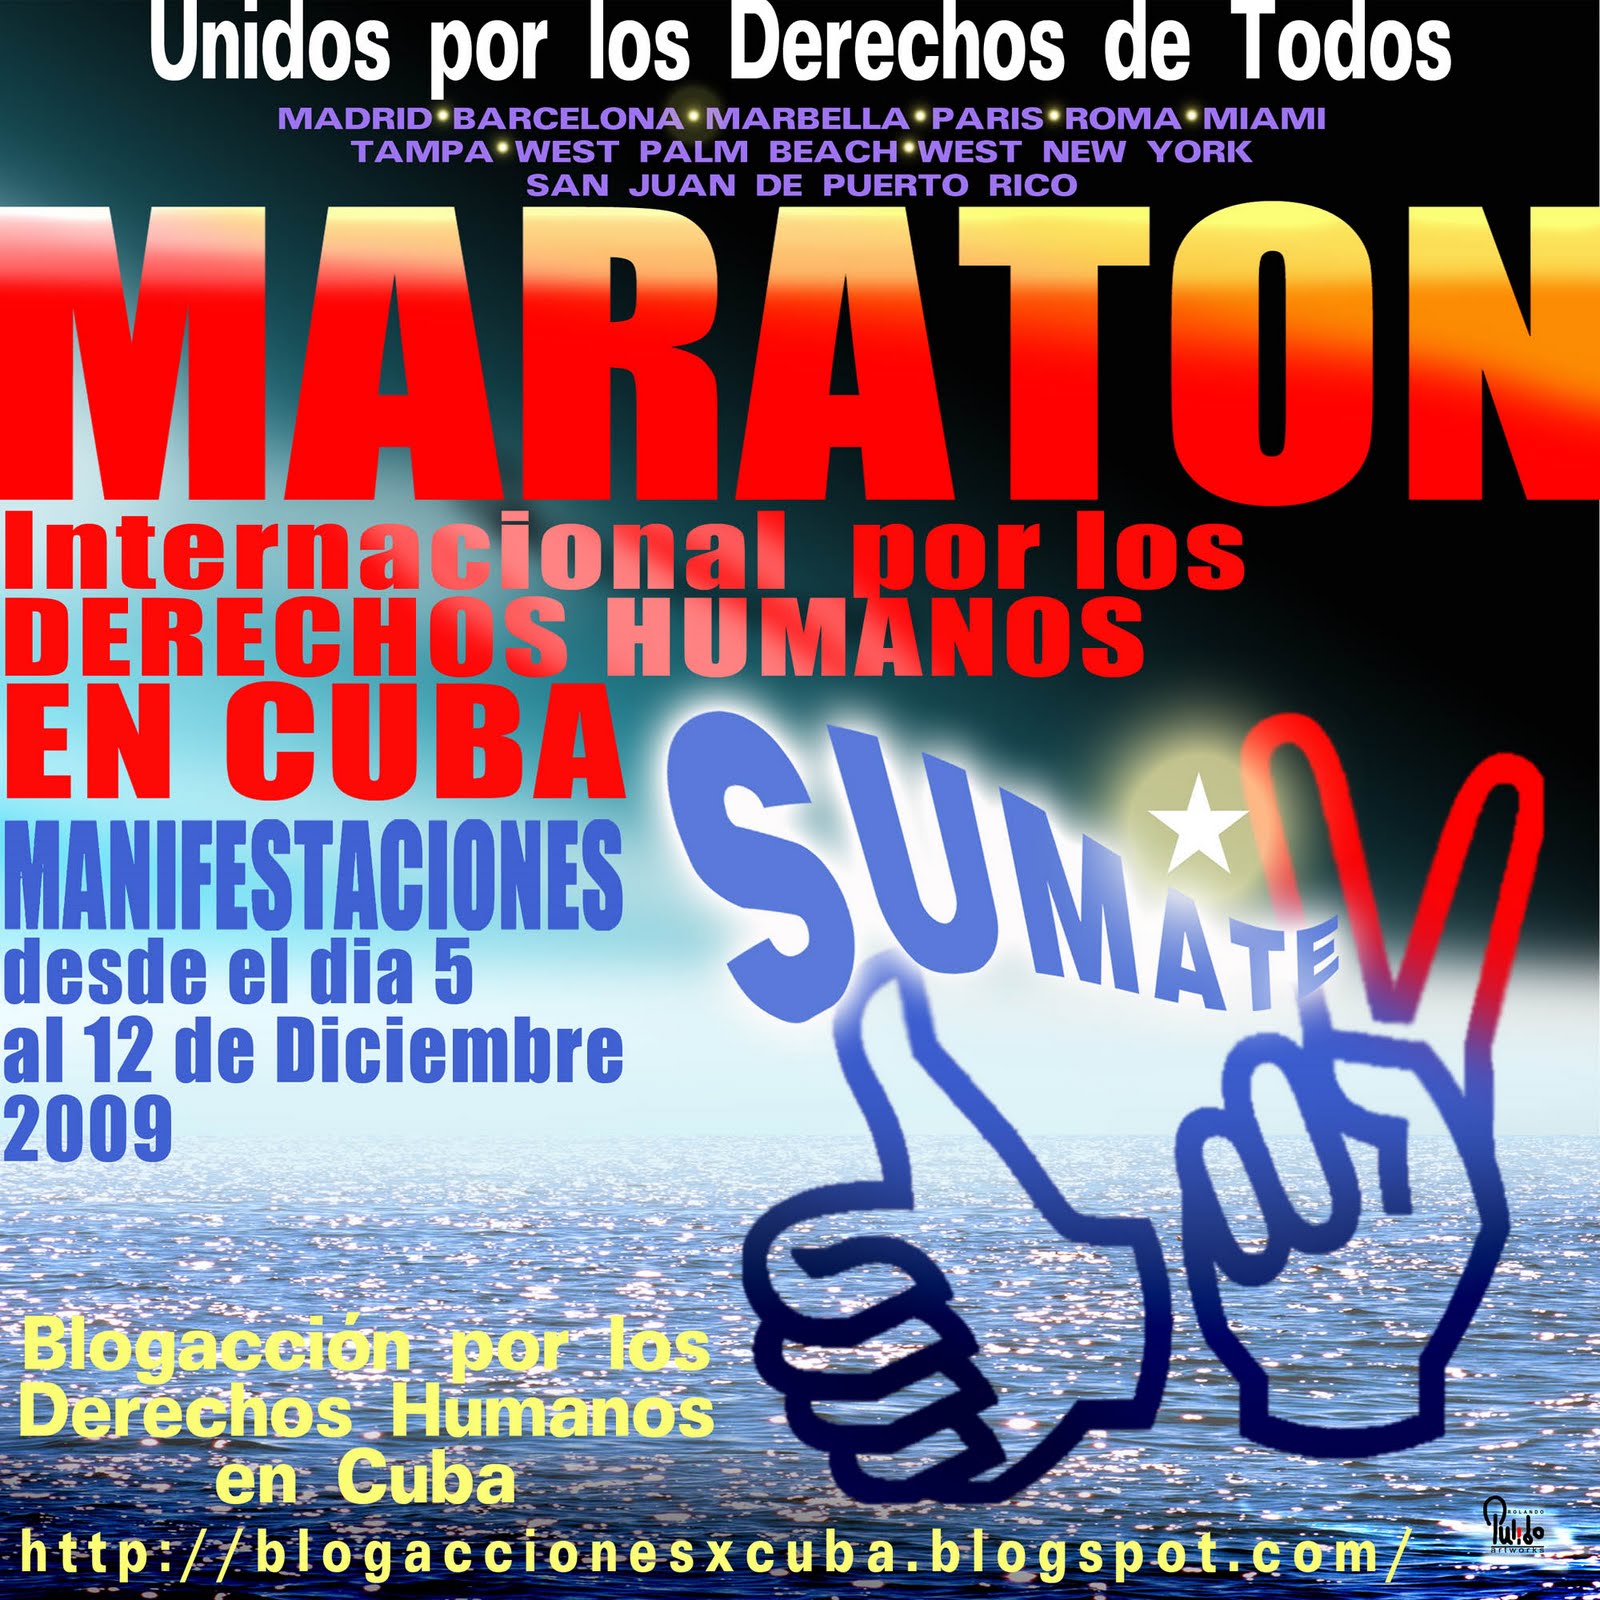 Blogacción por los Derechos Humanos en Cuba: Unidos por los Derechos de Todos Blogaccion+11+2009+01